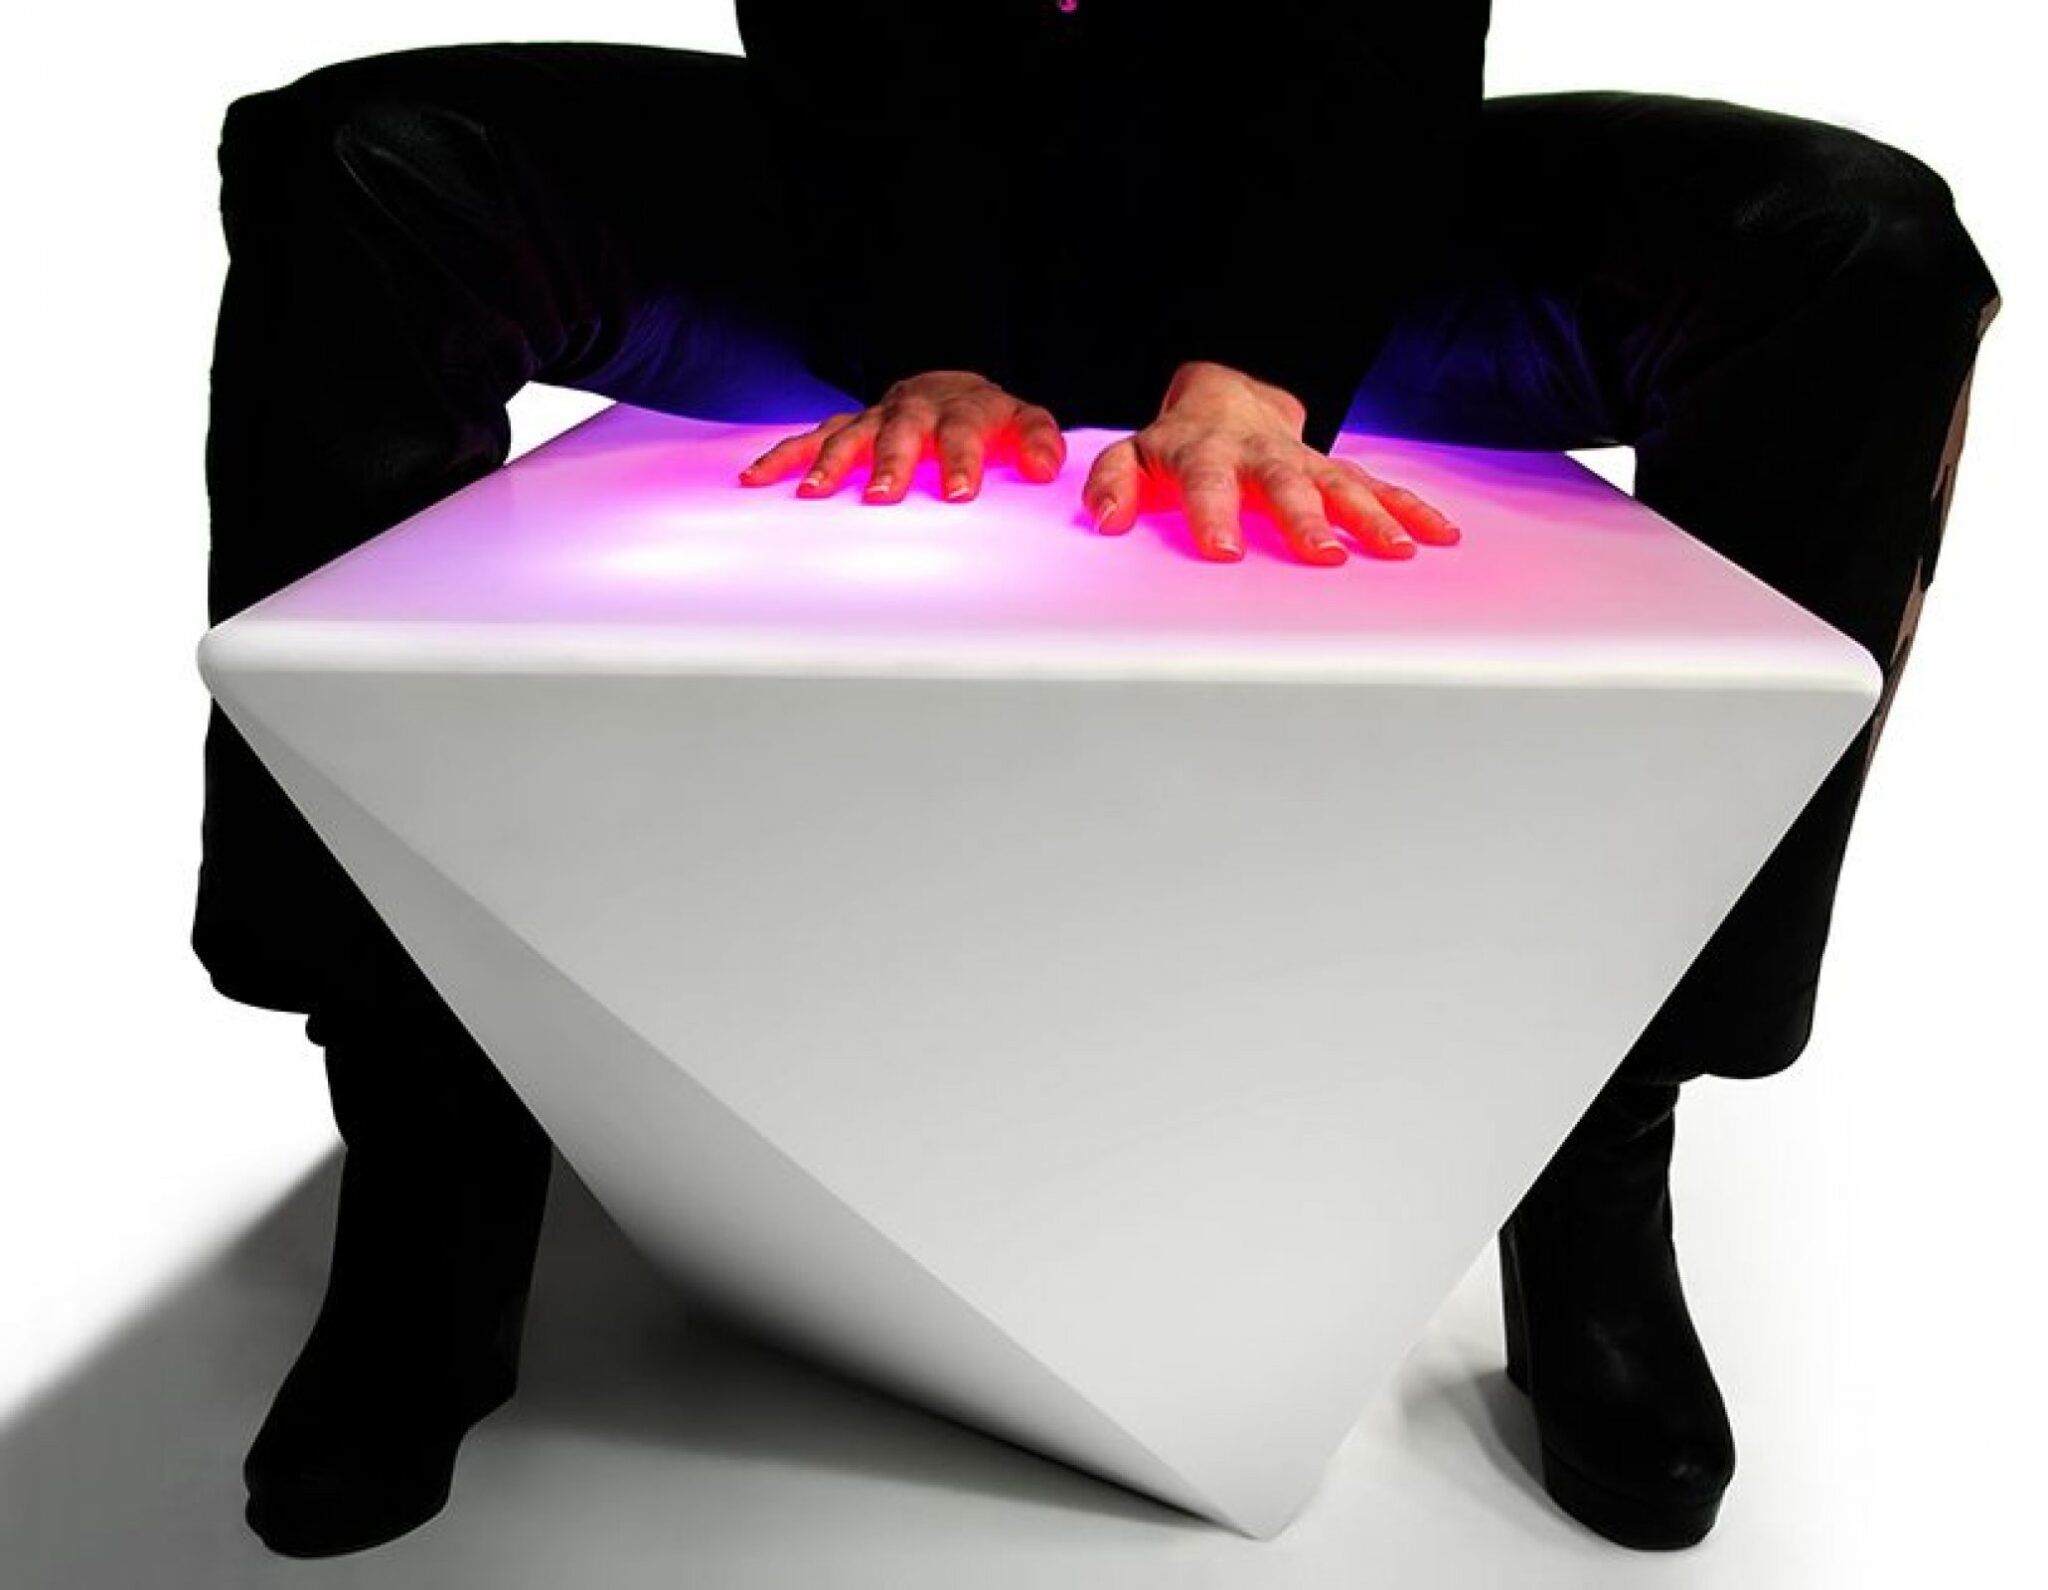 Interactive light. Стол светящийся реагирующий на касание. Стол реагирует на прикосновения. Интерактивная мебель. Материал реагирующий на прикосновение.